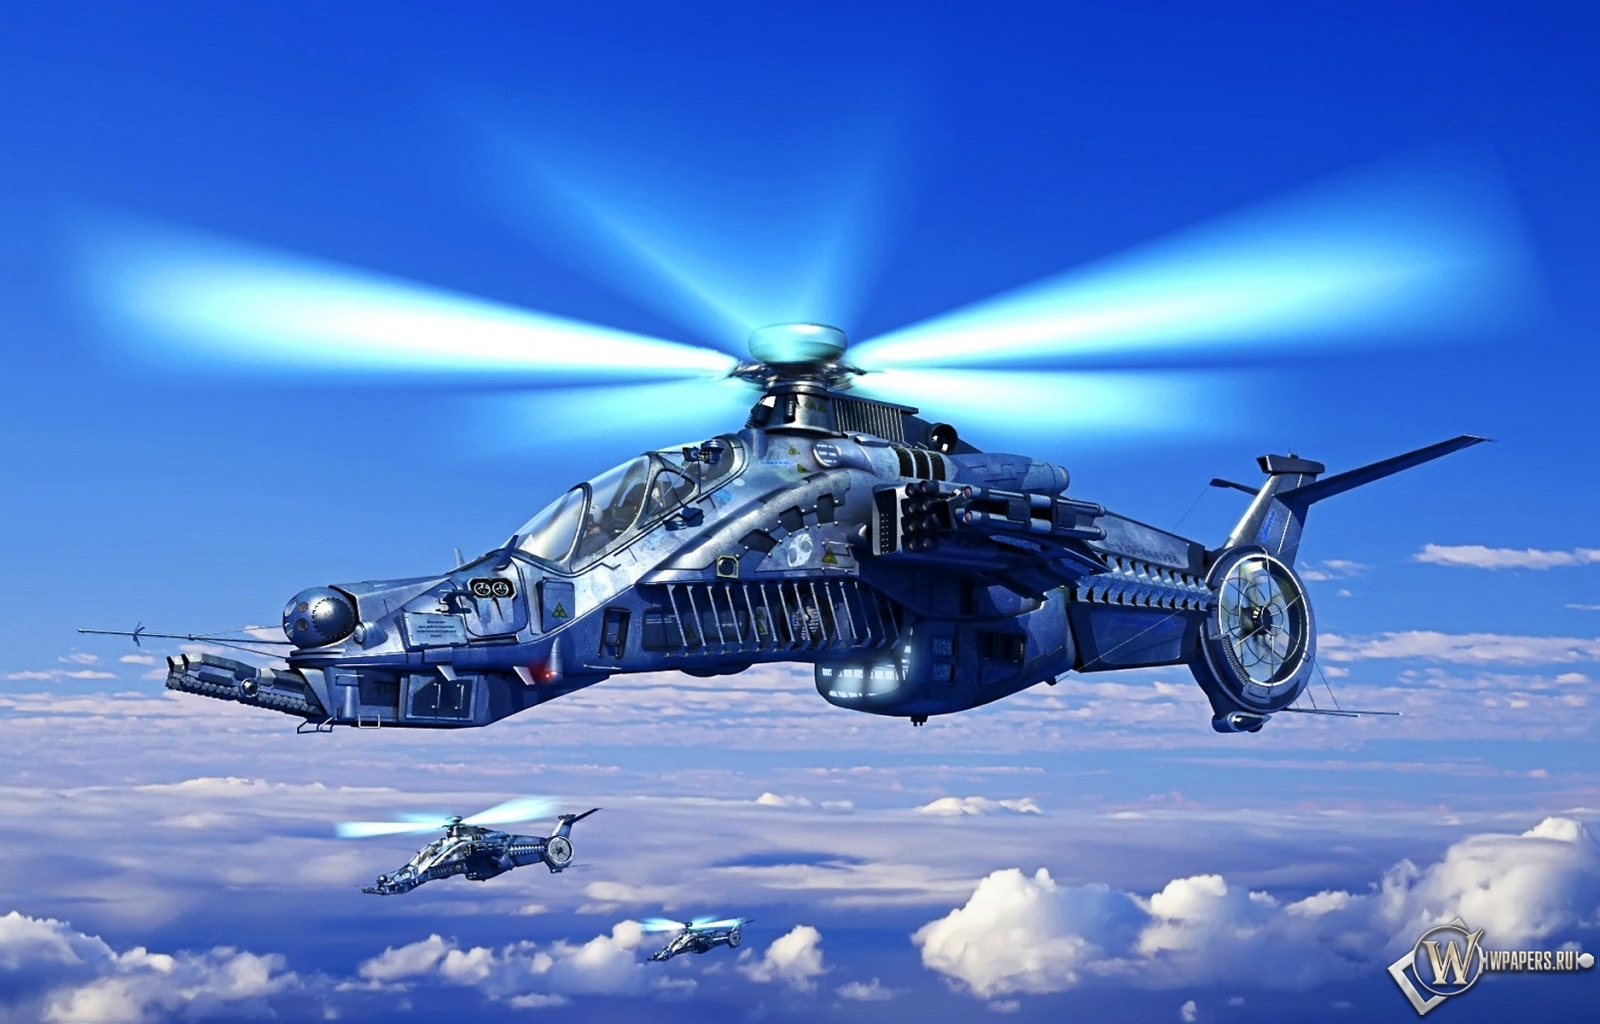 Вертолет будующего 1600x1024